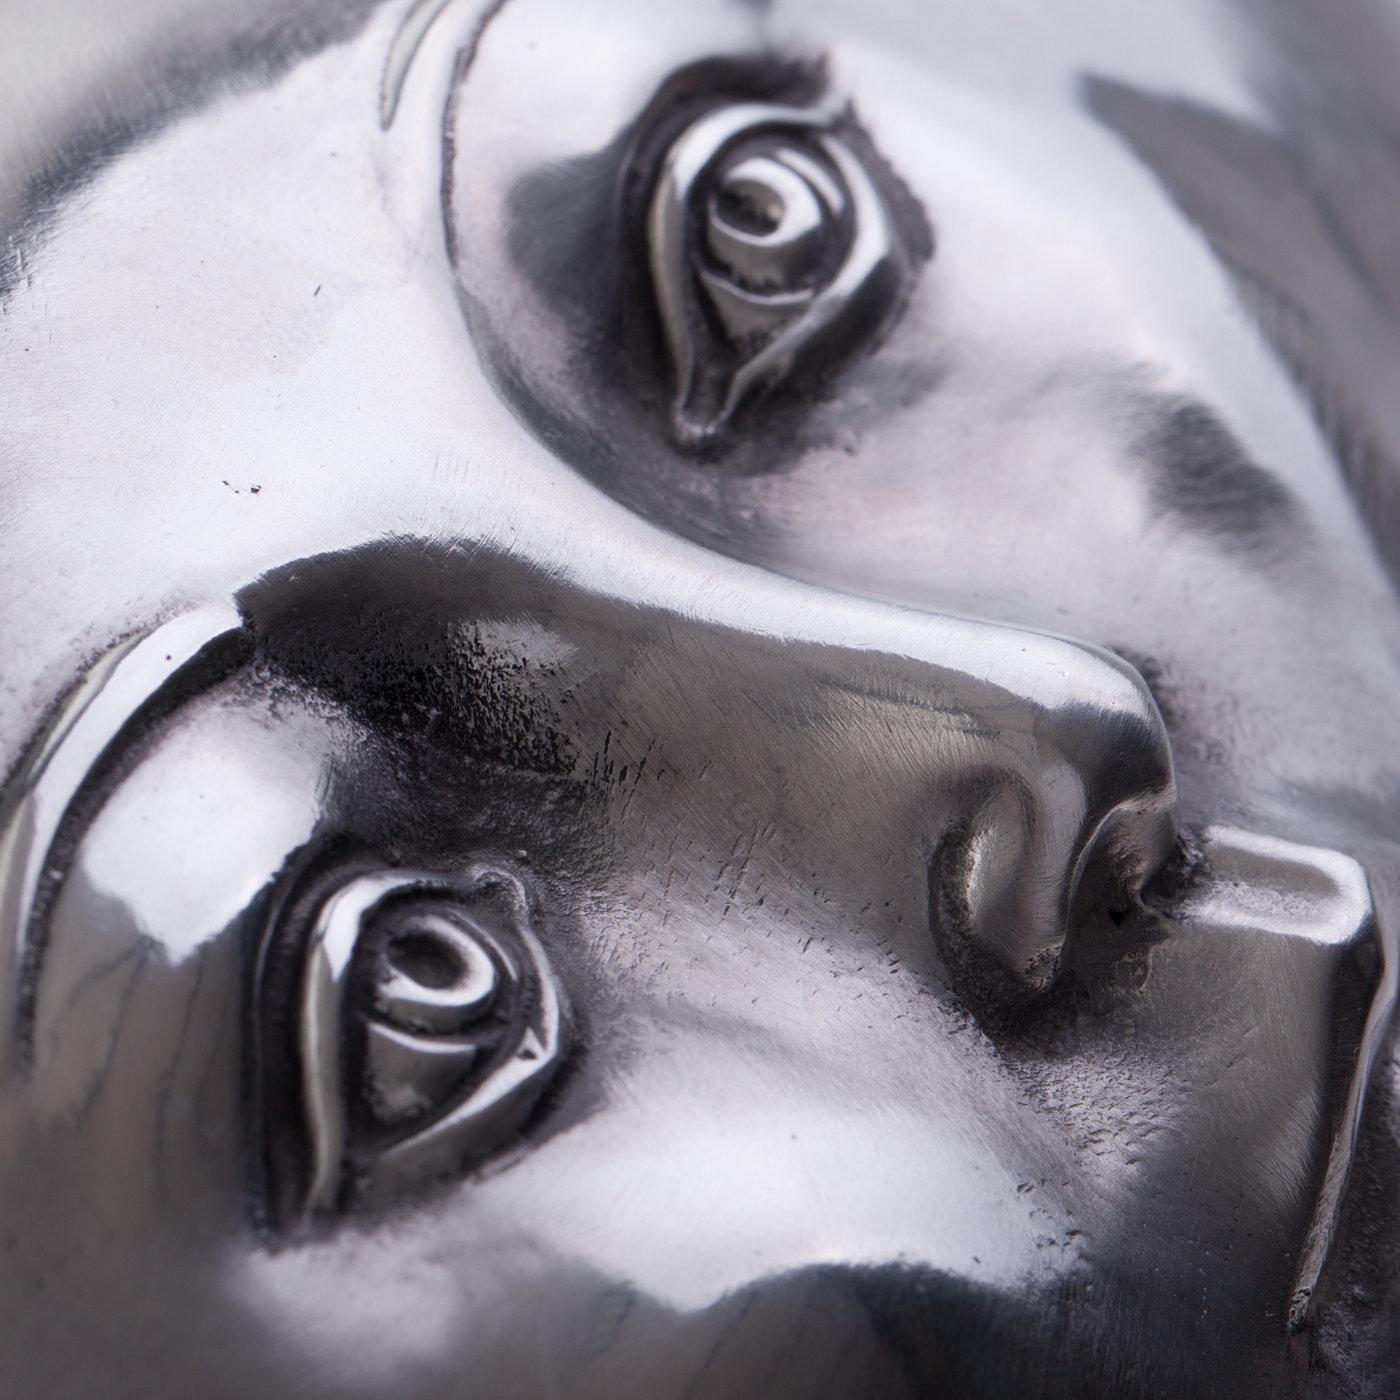 Symbolisant un remède aux maux de la société, cette sculpture typiquement surréaliste de l'artiste florentin Leonardo Bossio représente une grande pilule avec un visage humain sculpté de manière complexe. Coulée à la main en aluminium et polie pour